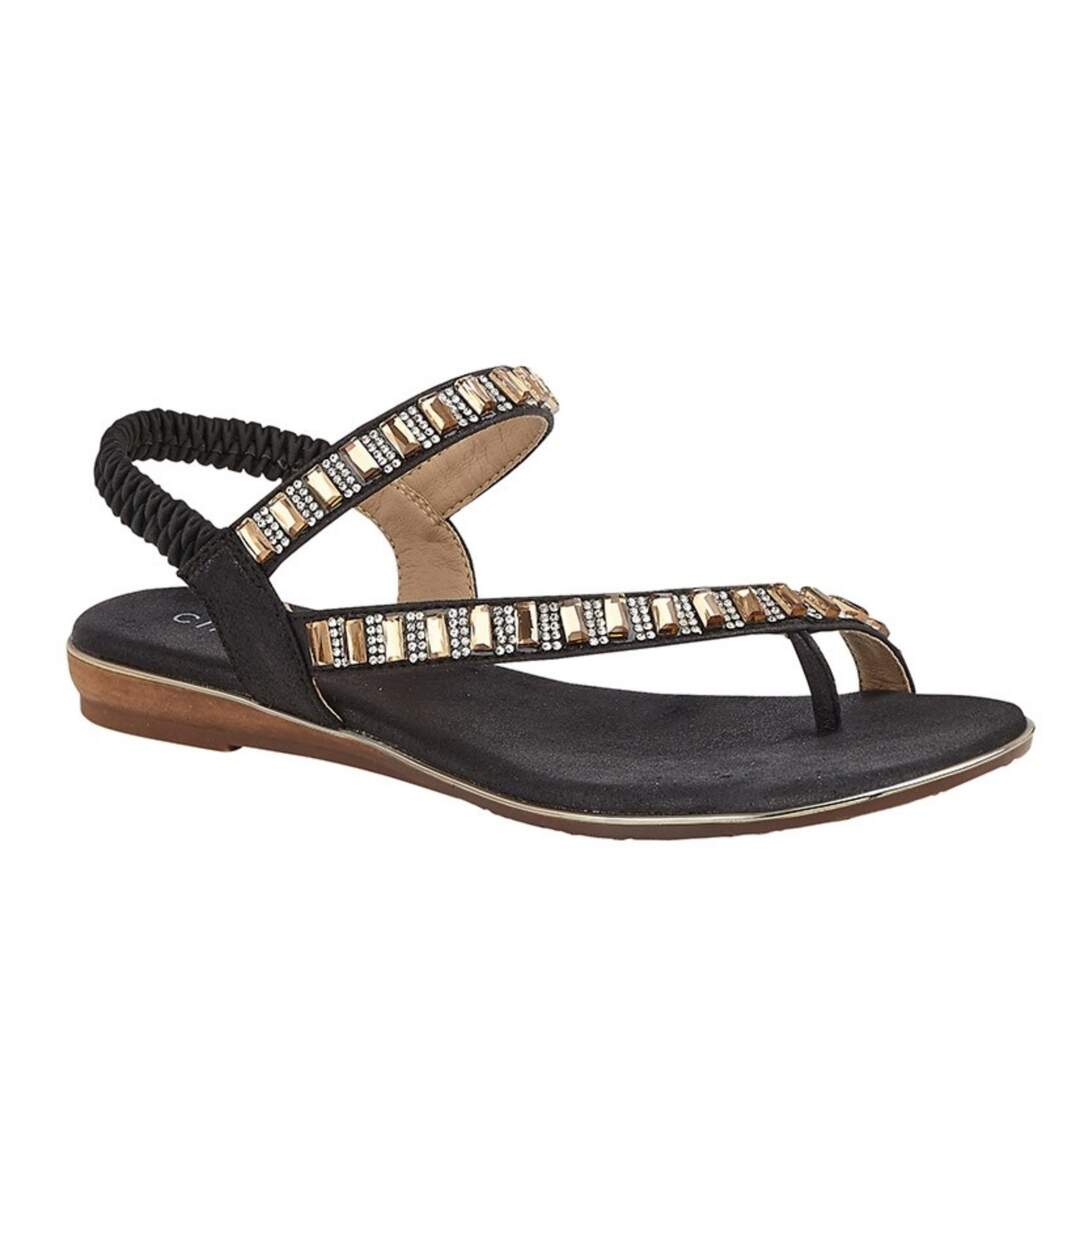 Cipriata Womens/Ladies Rita Jewelled Sandals (Black) - UTDF1924